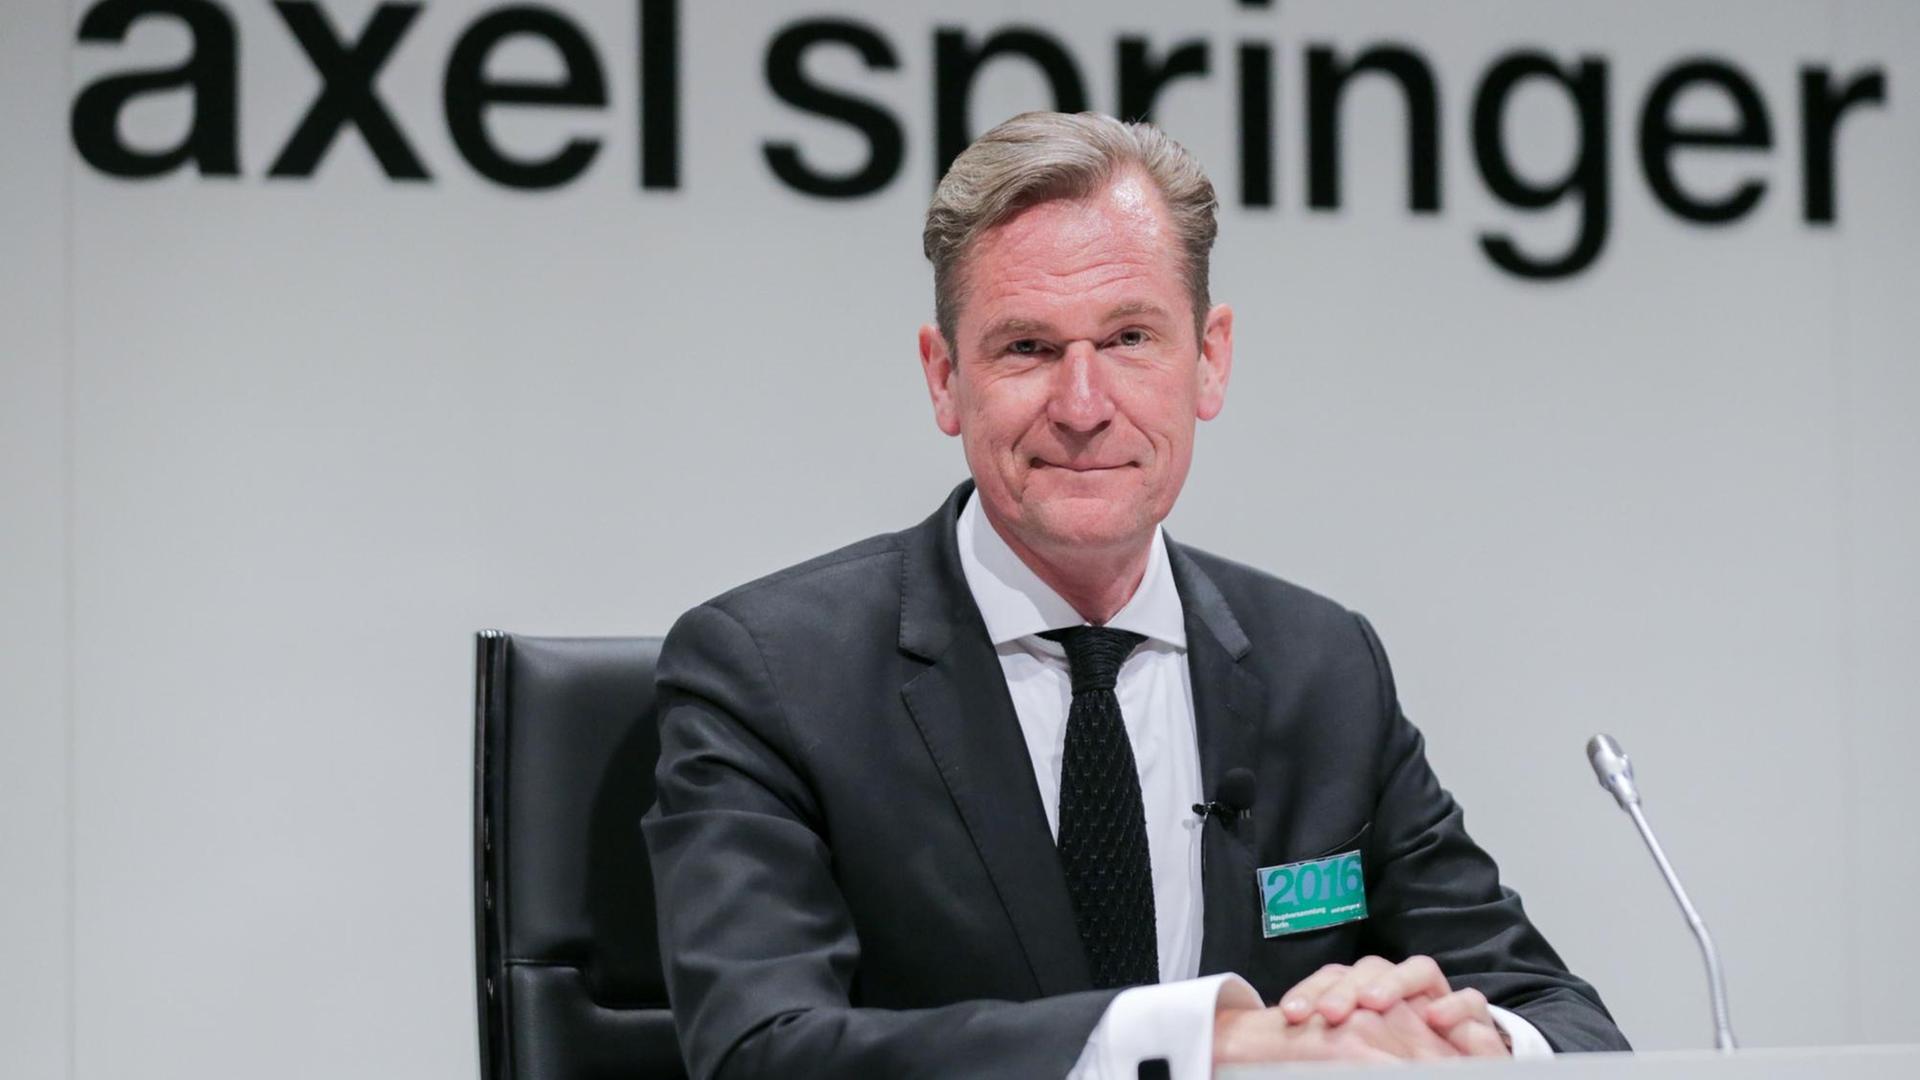 Der Vorstandsvorsitzende des Medienunternehmens Axel Springer SE, Mathias Döpfner blickt am 13.04.2016 in Berlin zu Beginn der Hauptversammlung des Konzerns in die Kamera des Fotografen